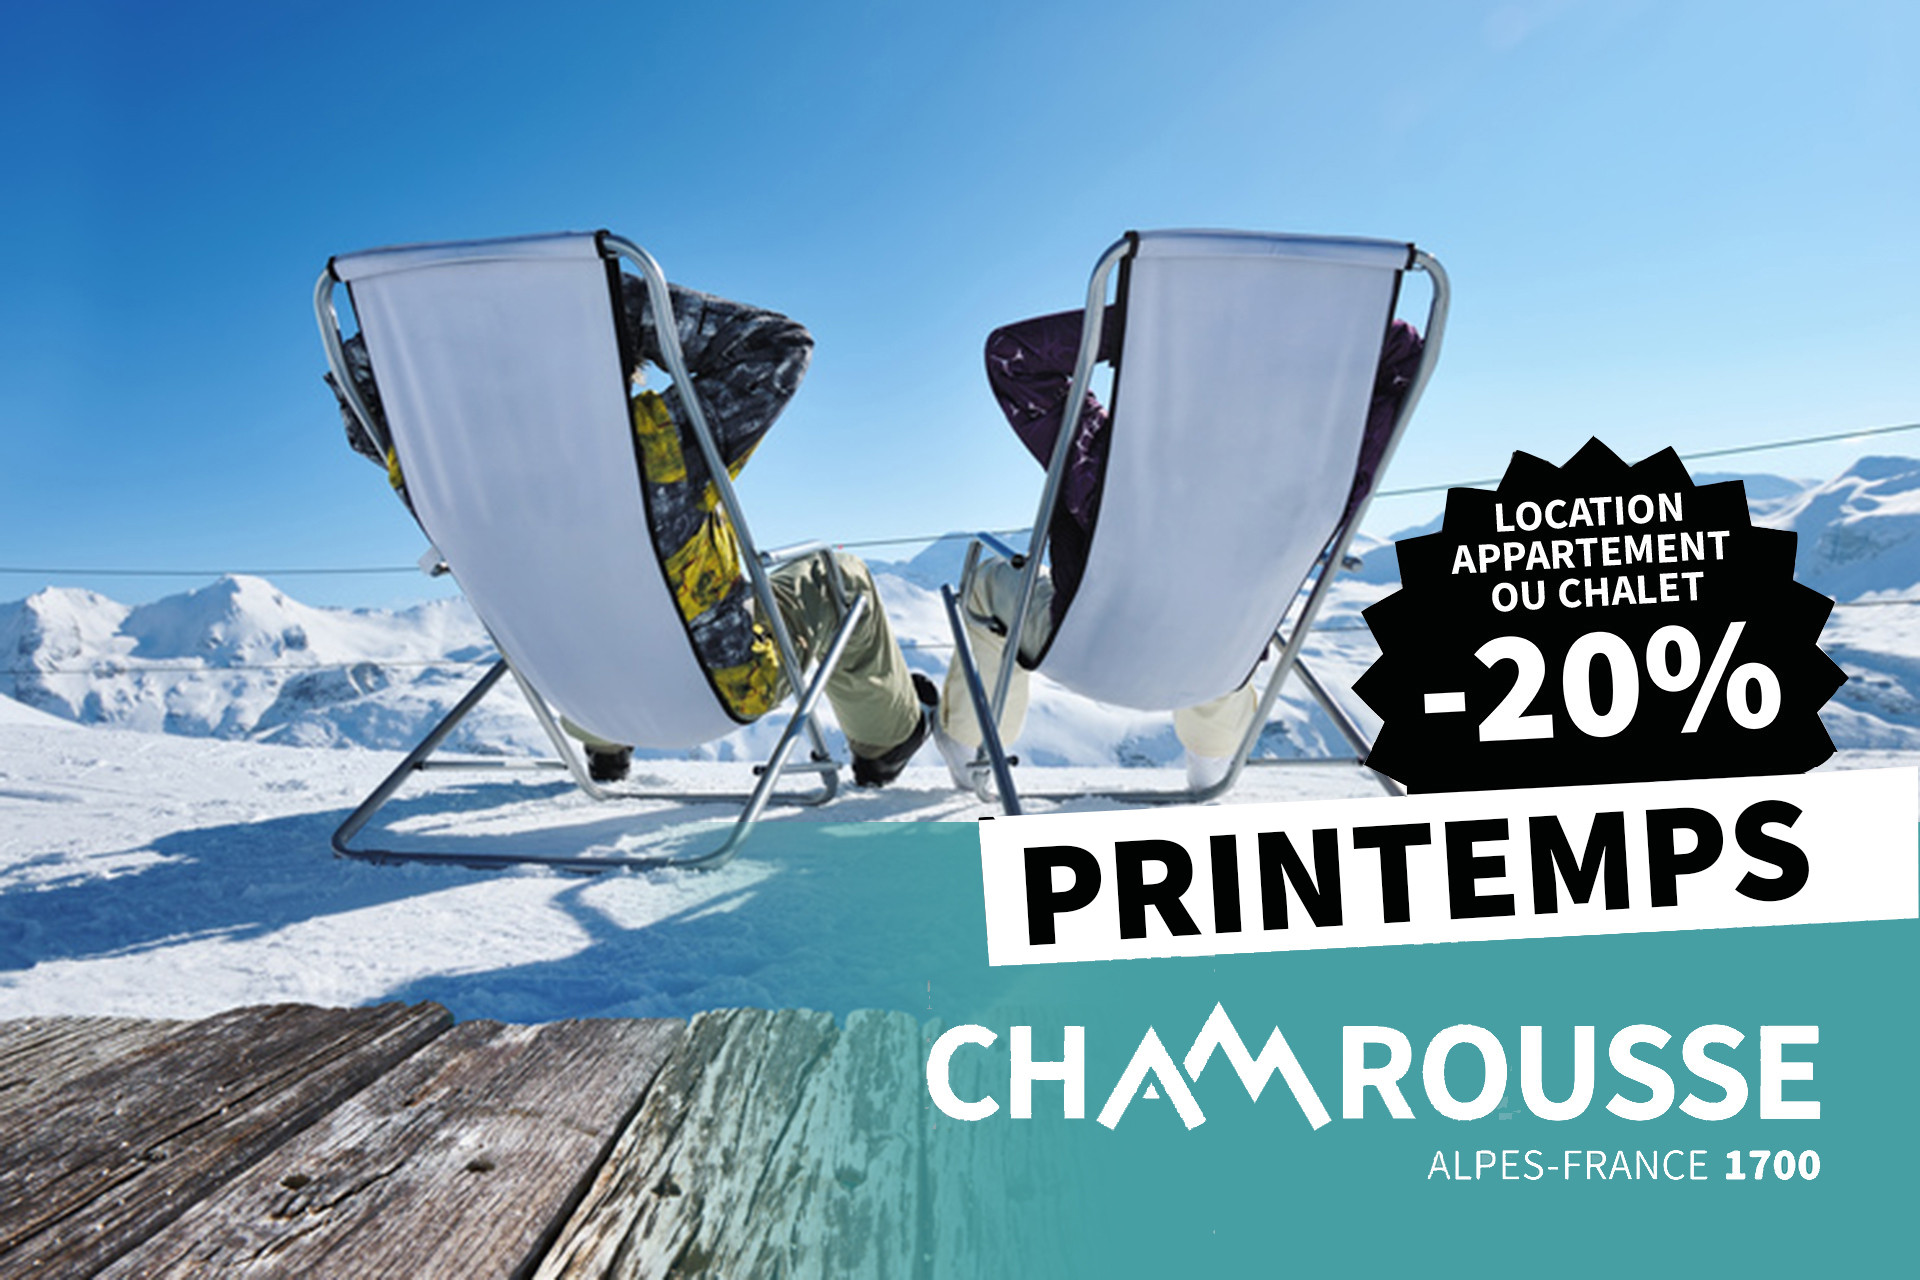 Chamrousse location appartement chalet promotion printemps Chamrousse Réservation station ski grenoble lyon isère alpes france